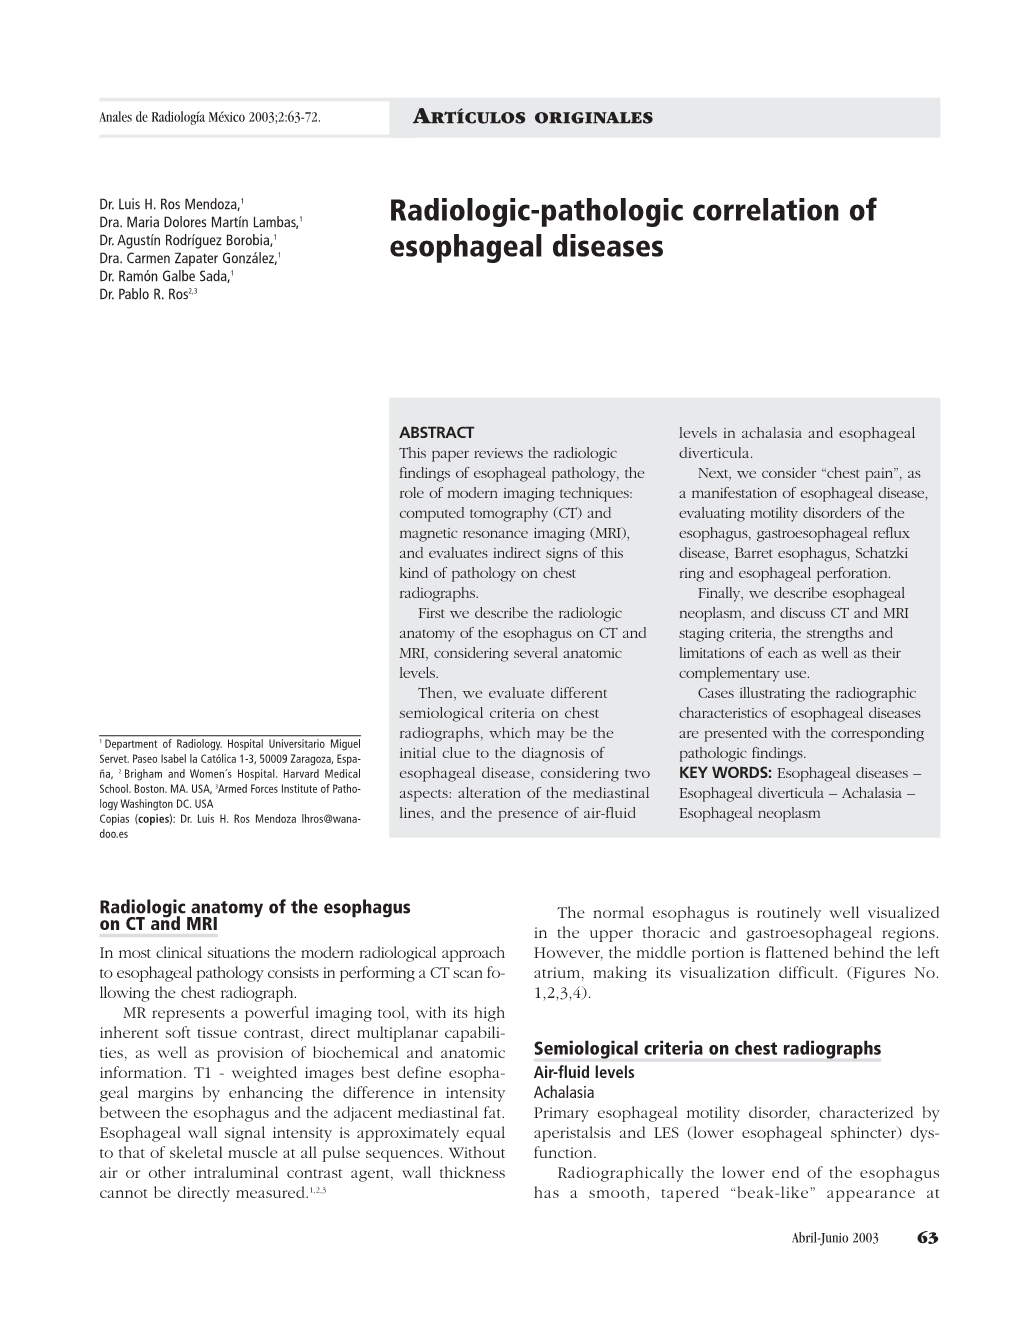 Radiologic-Pathologic Correlation of Esophageal Diseases